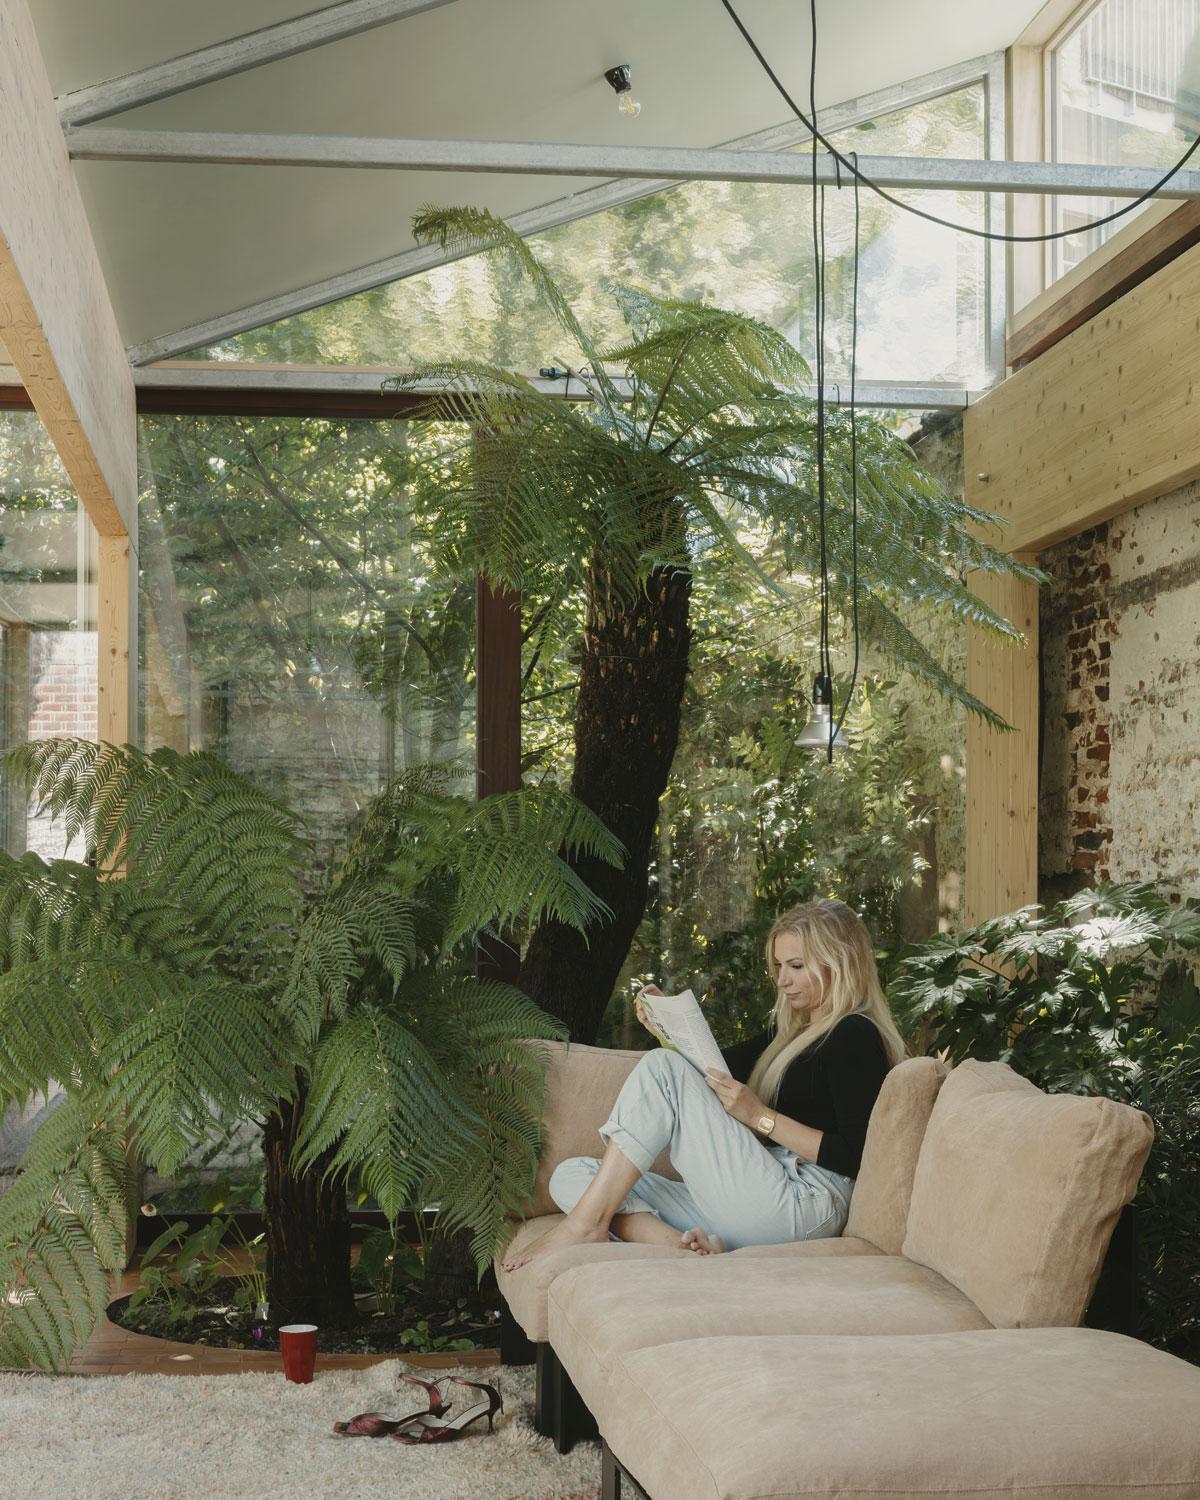 L’habitante, Céline Coussaert, à côté de la fougère arborescente, dans un canapé de Bea Mombaerts pour Serax, lors d’un rare moment de calme.